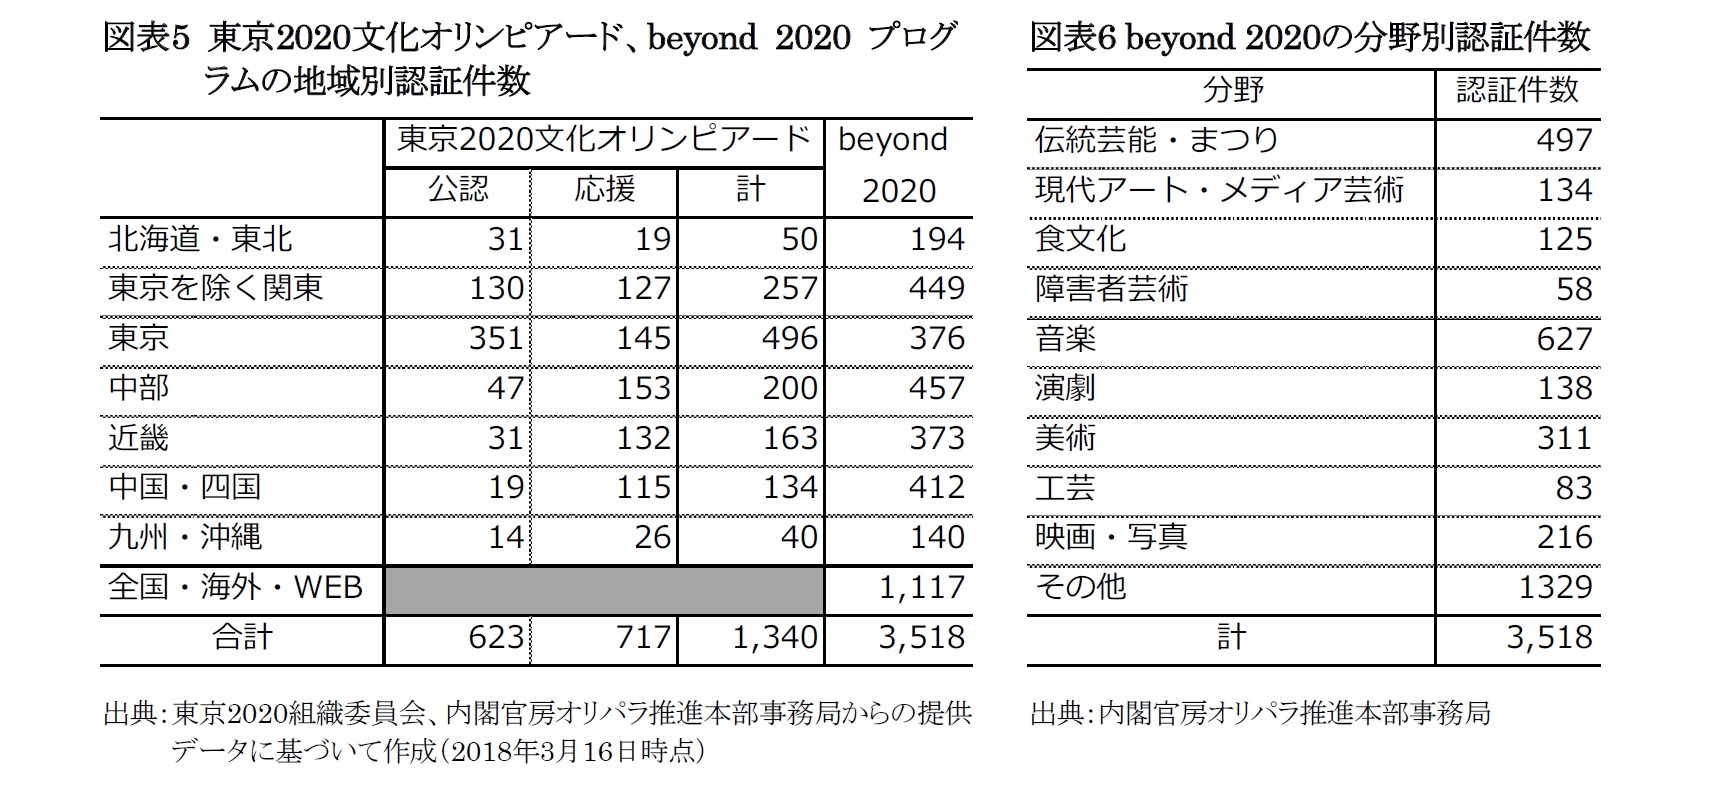 図表5 東京2020文化オリンピアード、beyond 2020 プログラムの地域別認証件数/図表6 beyond 2020の分野別認証件数